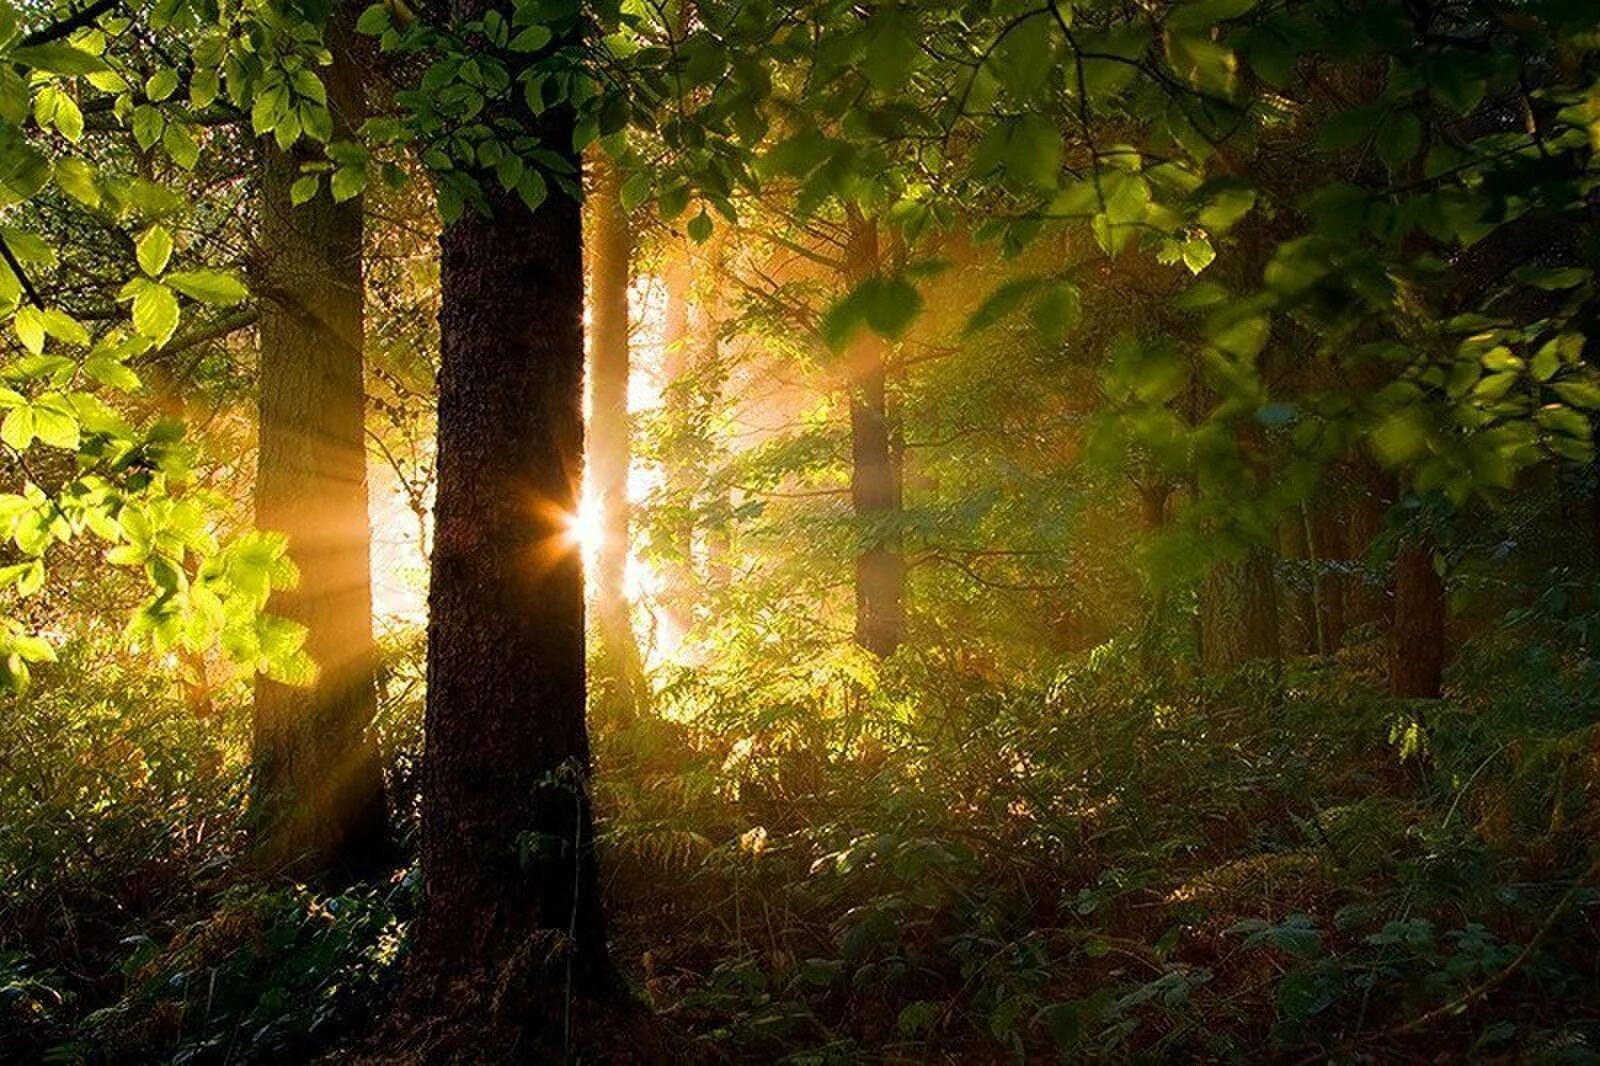 "Солнце в лесу". Лес Освещенный солнцем. Природа солнце. Солнечный лес. Солнце поднимается лес озаряется ярко красным светом